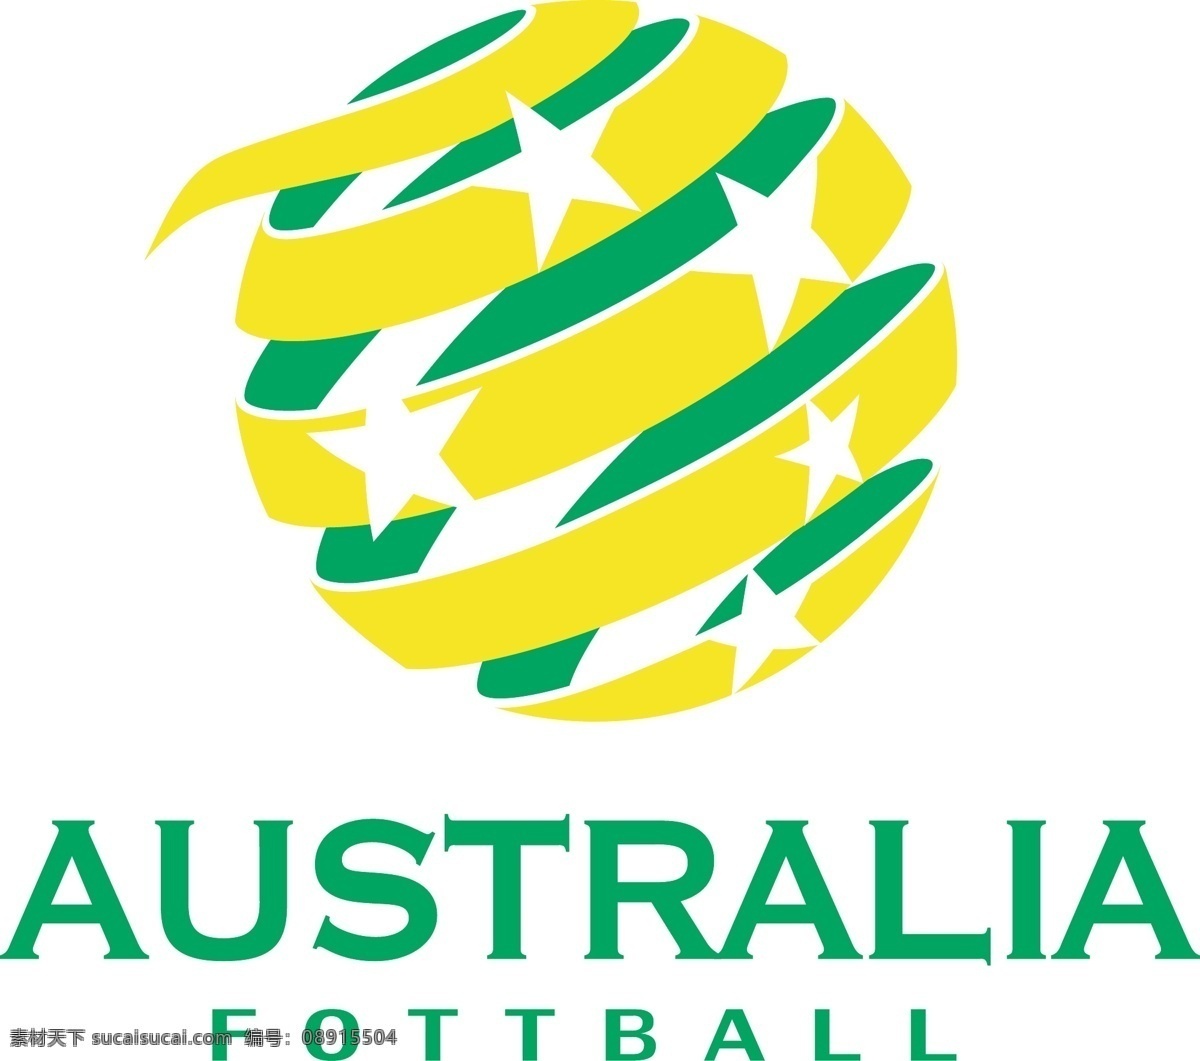 澳大利亚标志 澳大利亚 国家队 世界杯 足球 fifa australia 大洋洲 堪培拉 袋鼠军团 2018 英语 墨尔本 卡希尔 亚洲杯 足球标志 logo设计